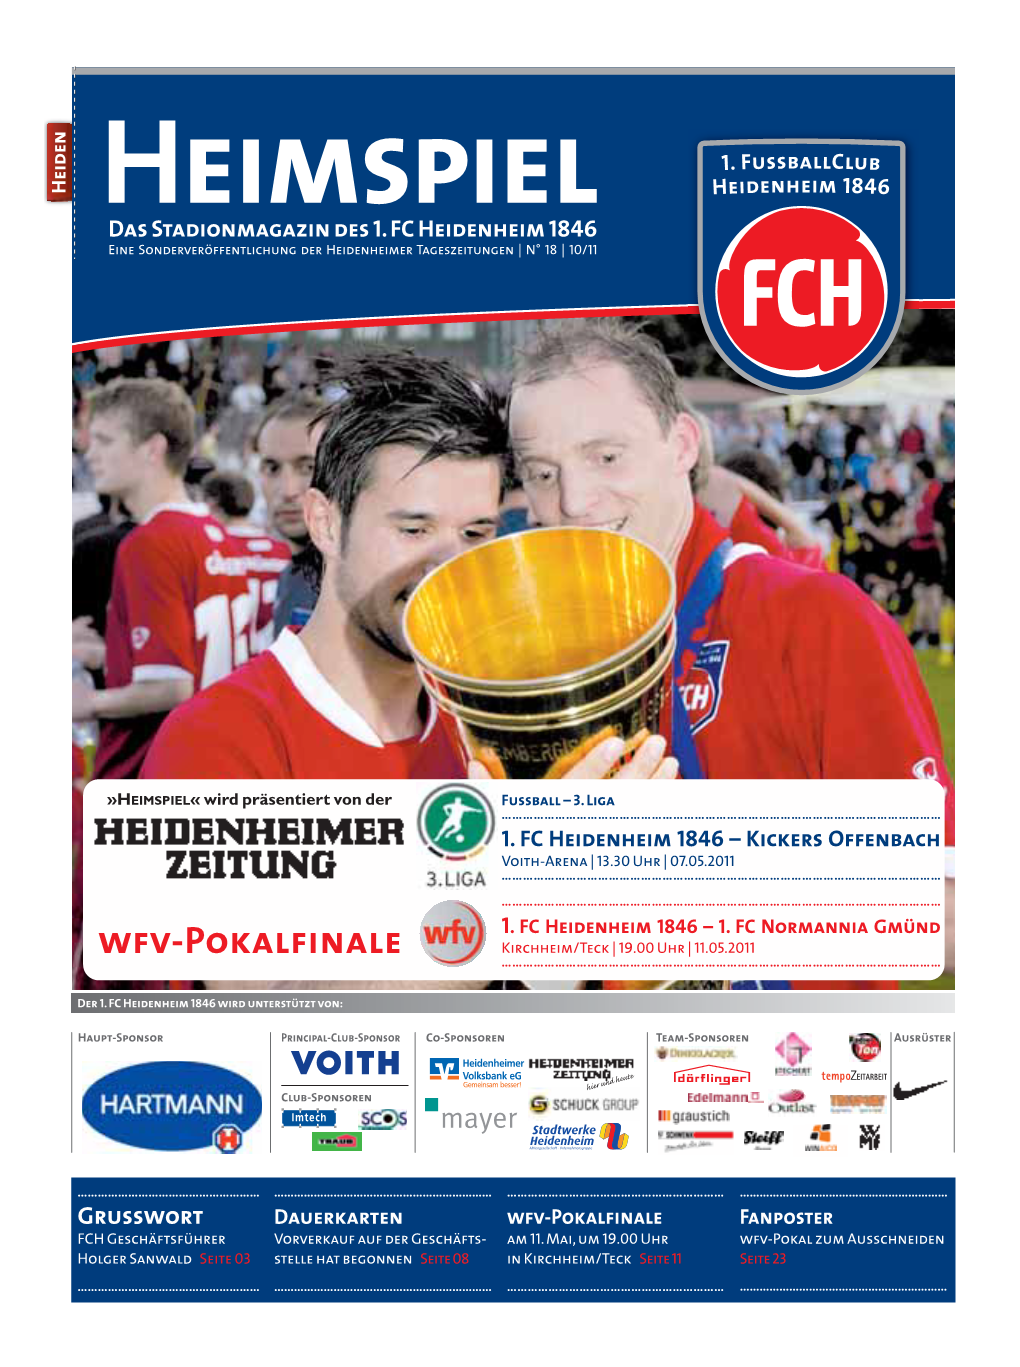 Das Stadionmagazin Des 1. FC Heidenheim 1846